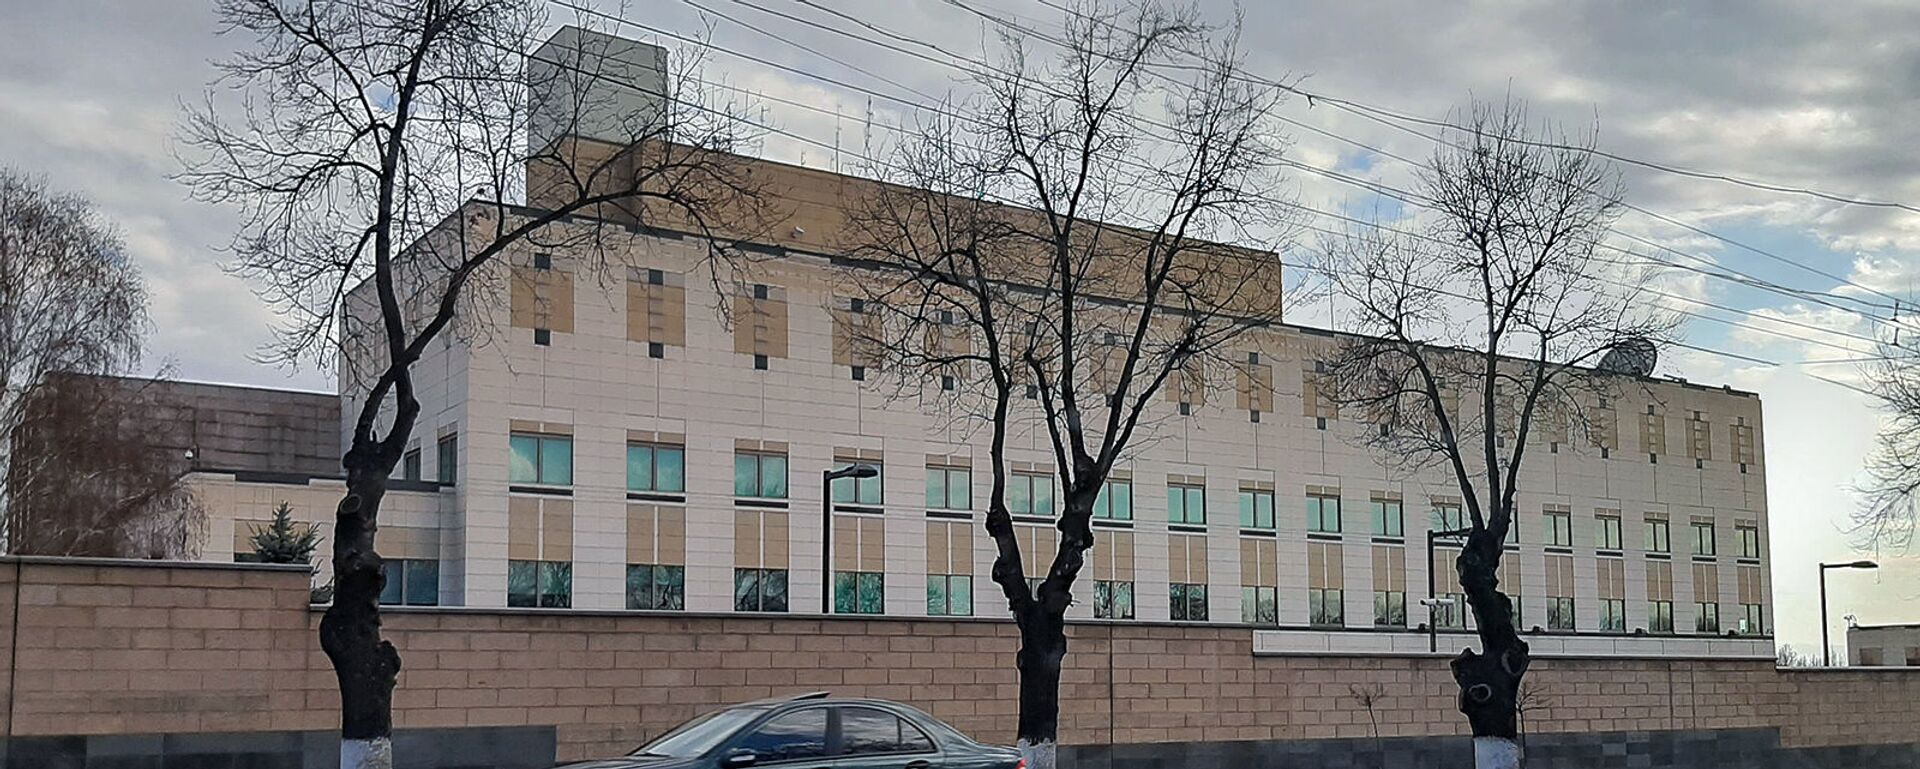 Здание посольства США в Армении - Sputnik Армения, 1920, 29.10.2020